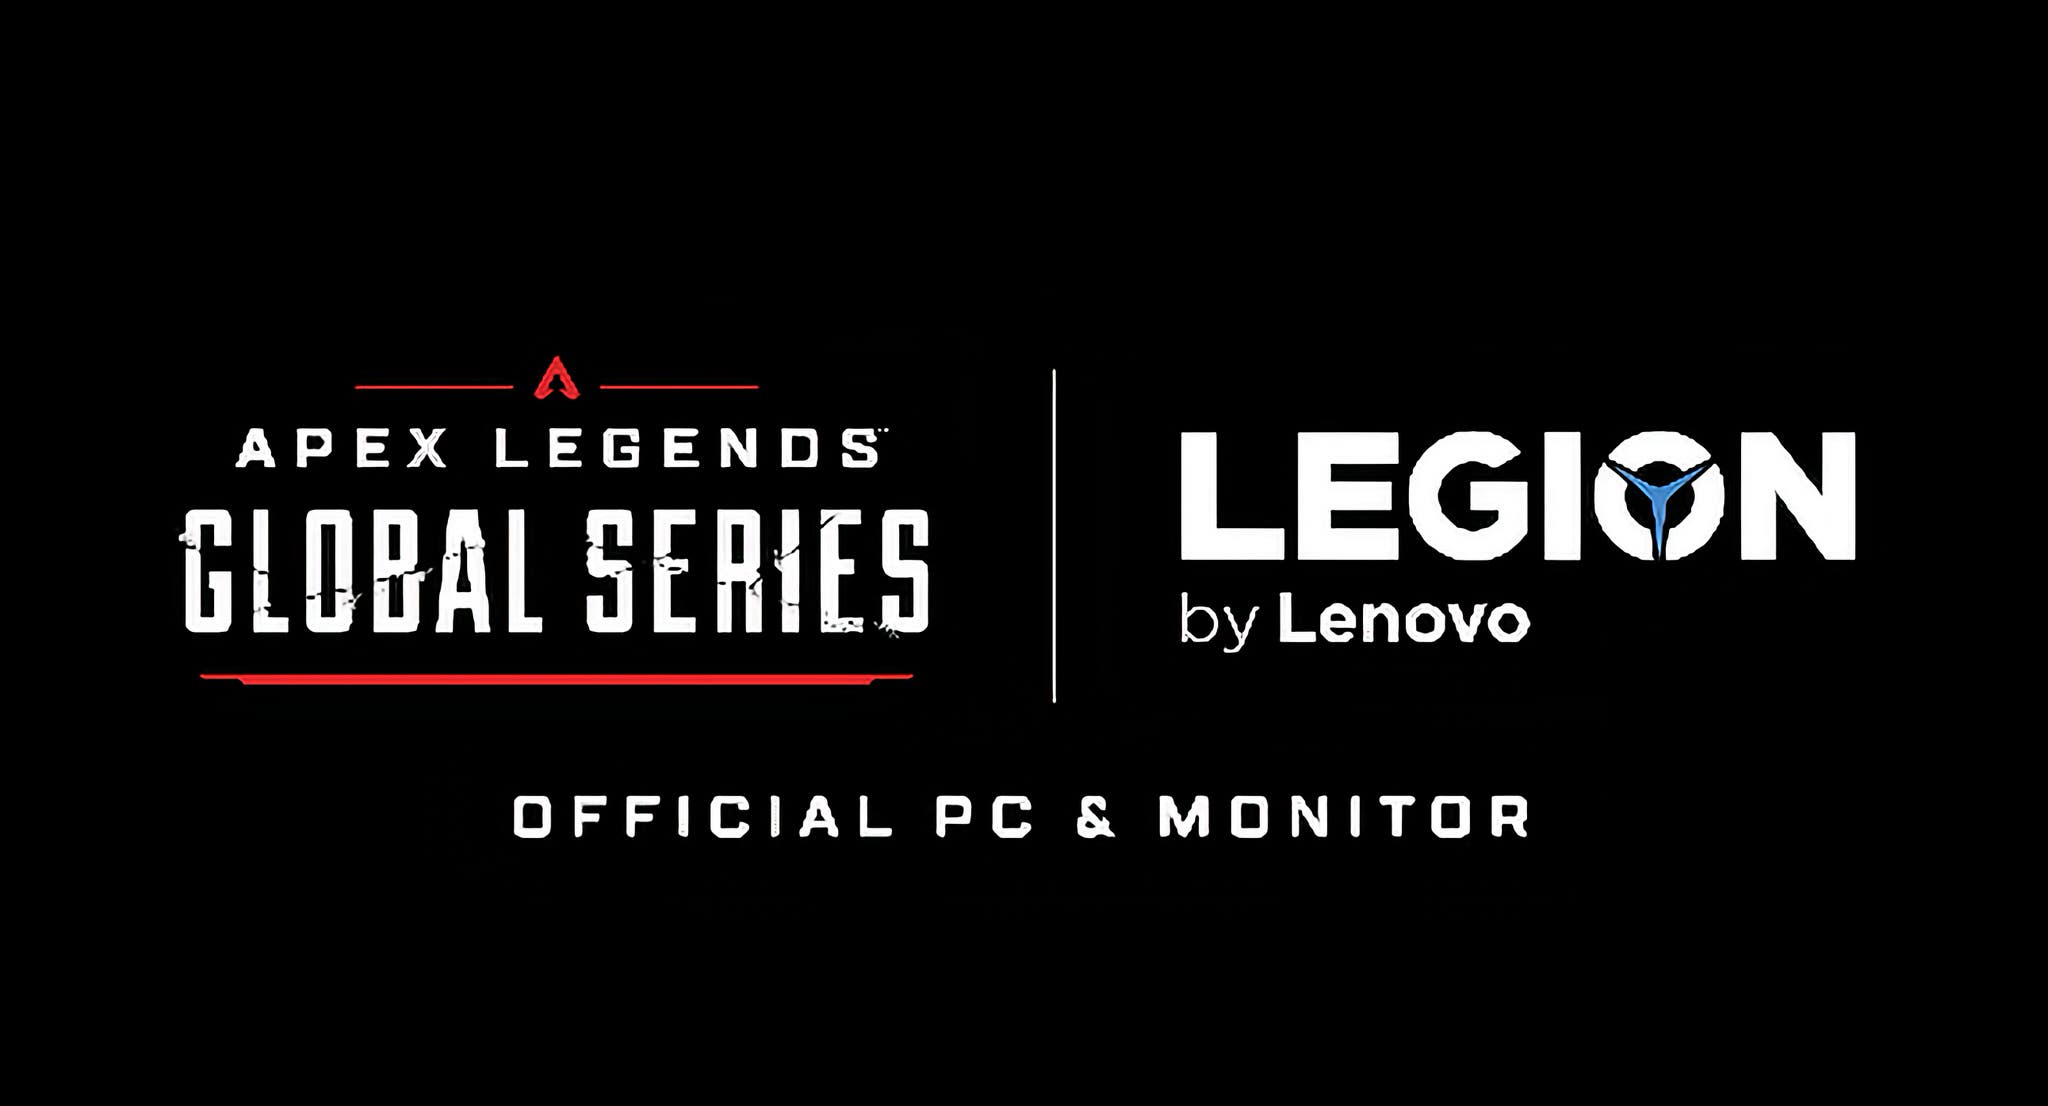 Lenovo Legion được chọn là nhãn hiệu PC và màn hình độc quyền cho giải đấu toàn cầu Apex Legends Global Series